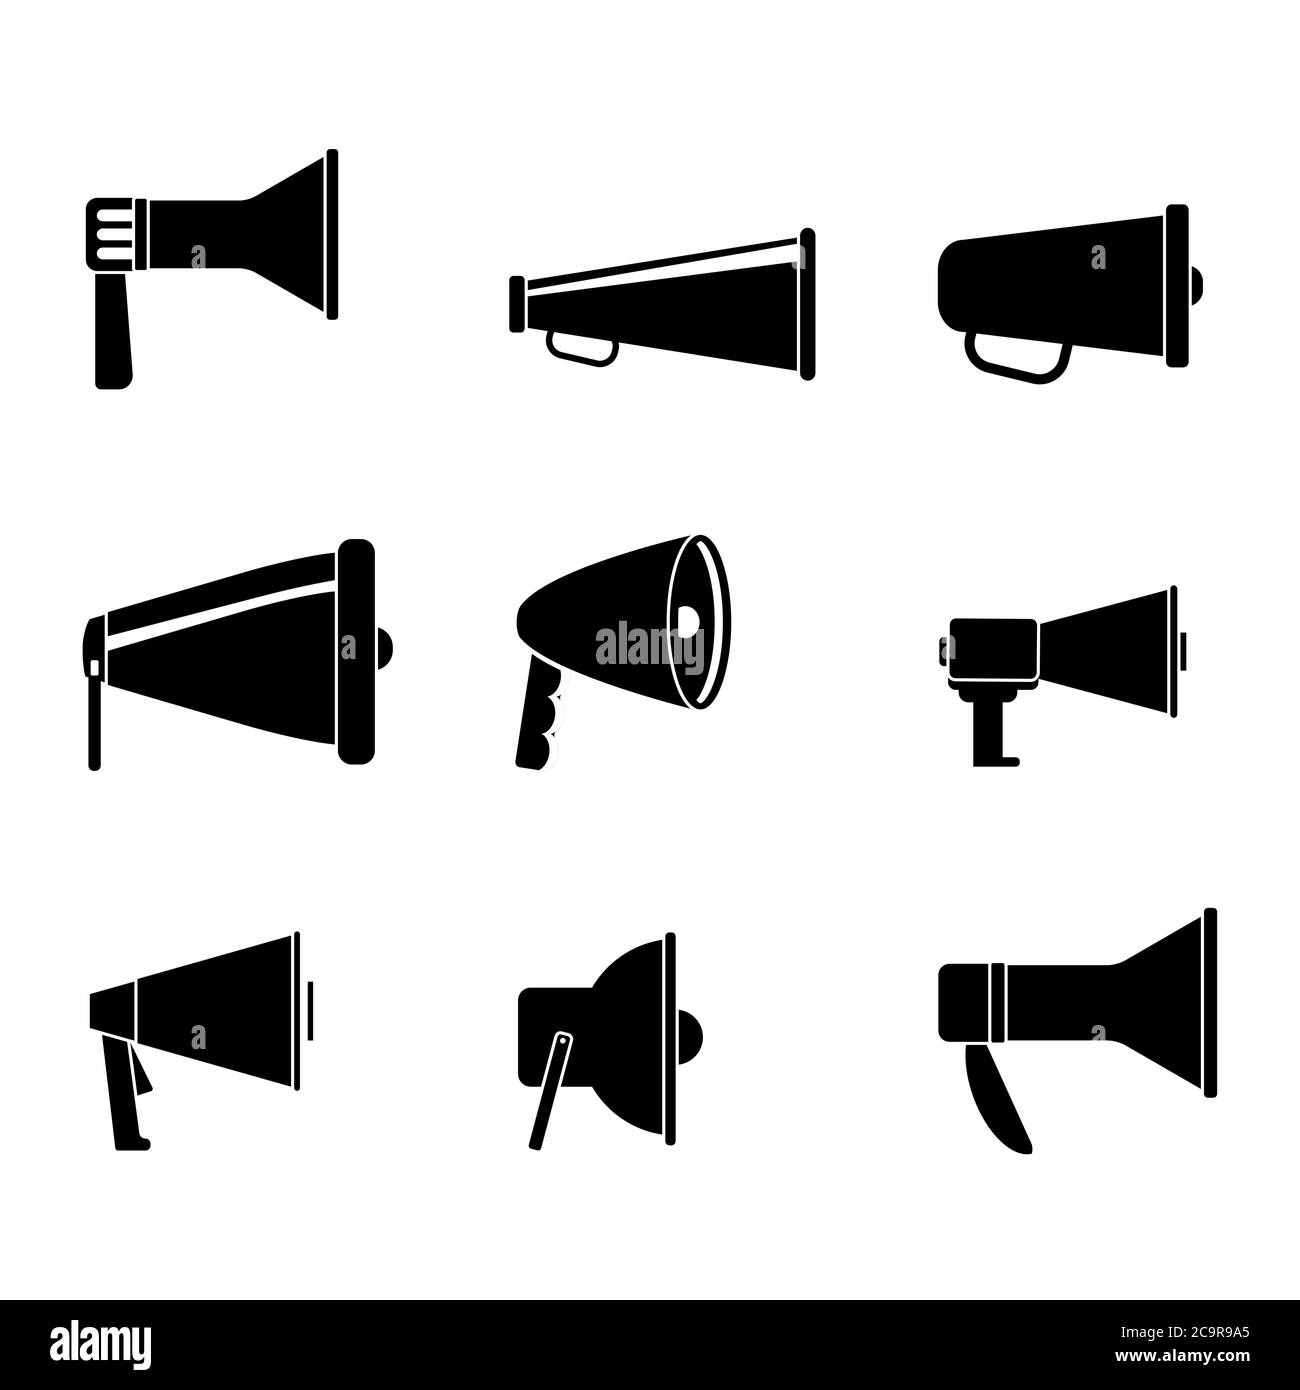 Satz Lautsprecher schwarz weiß. Sammlung Rundfunkgerät monochromen Stil, Voice-Shouting, Bullhorn-Sammlung für ankündigen und öffentliche Aufmerksamkeit Stock Vektor